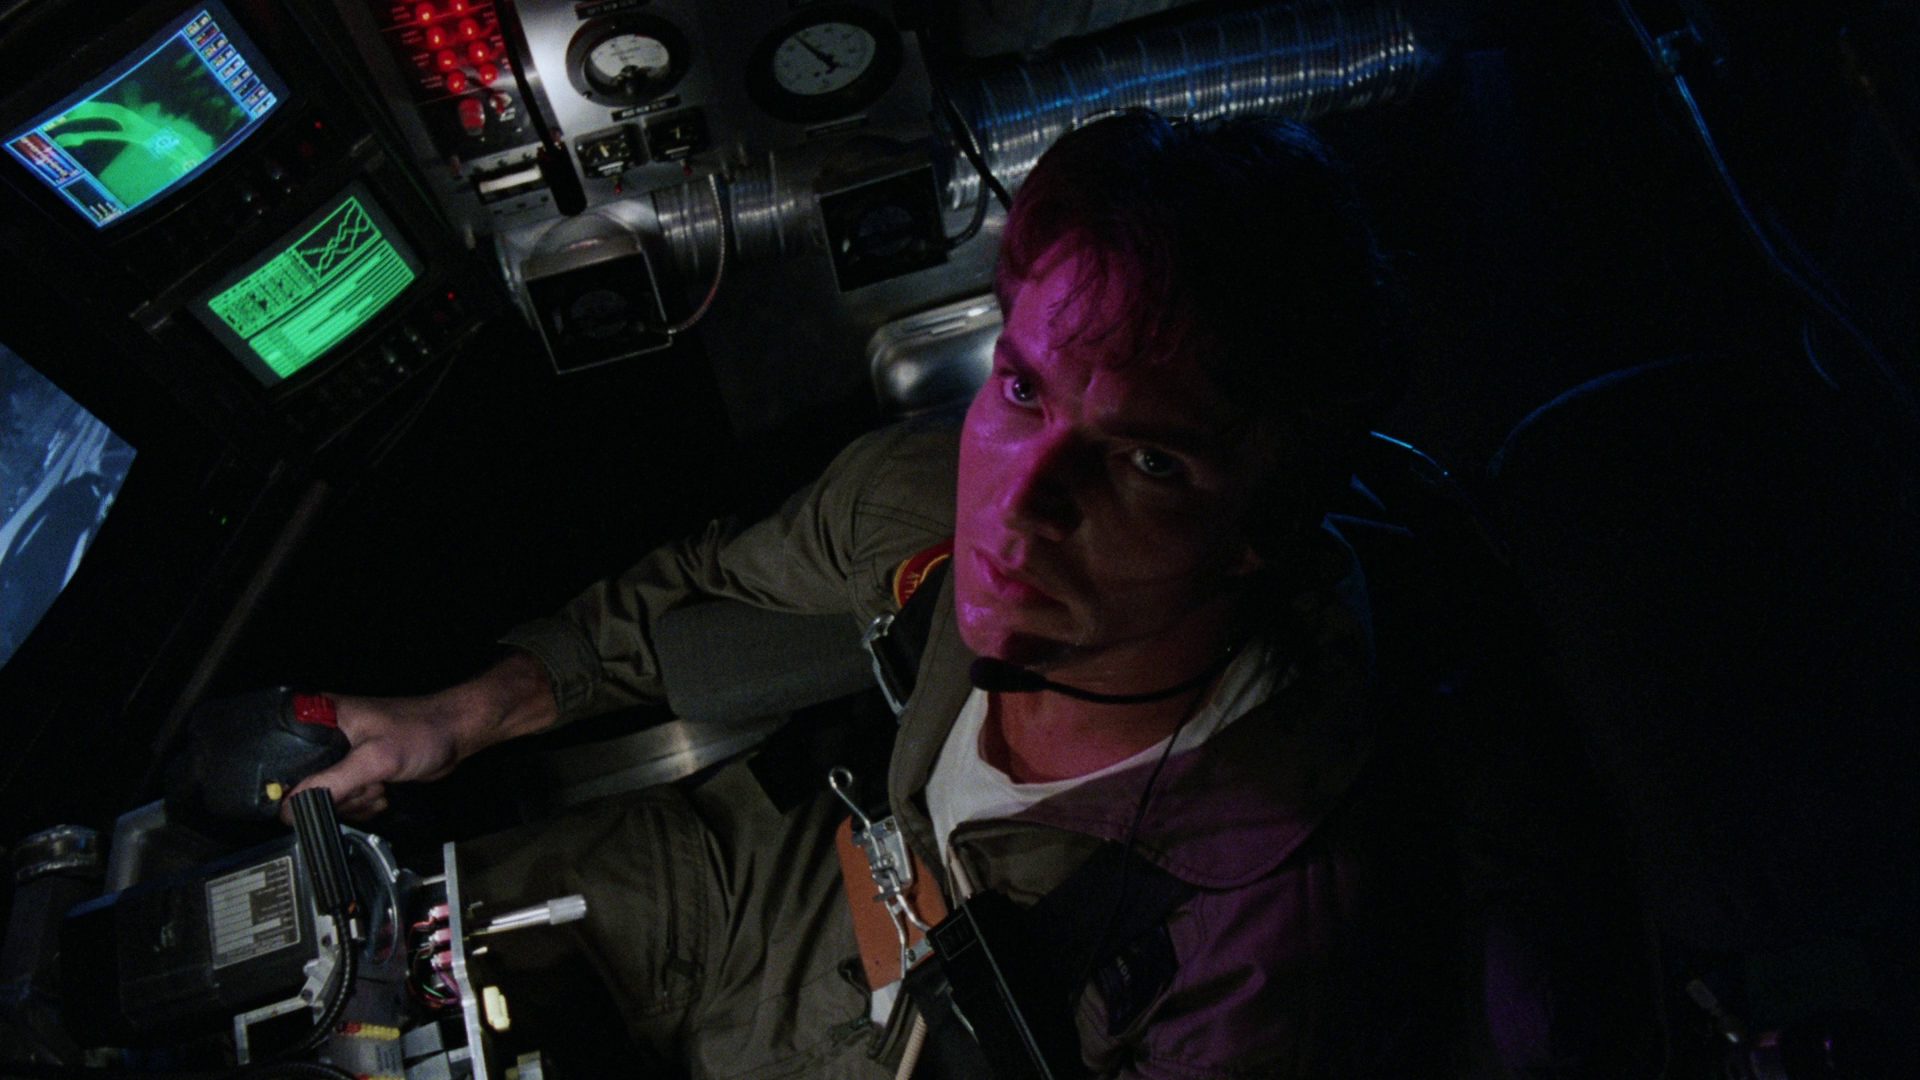 Blick von oben auf Dennis Quaid als Insasse eines Mini-U-Bootes, umgeben von Displays und Apparaturen.